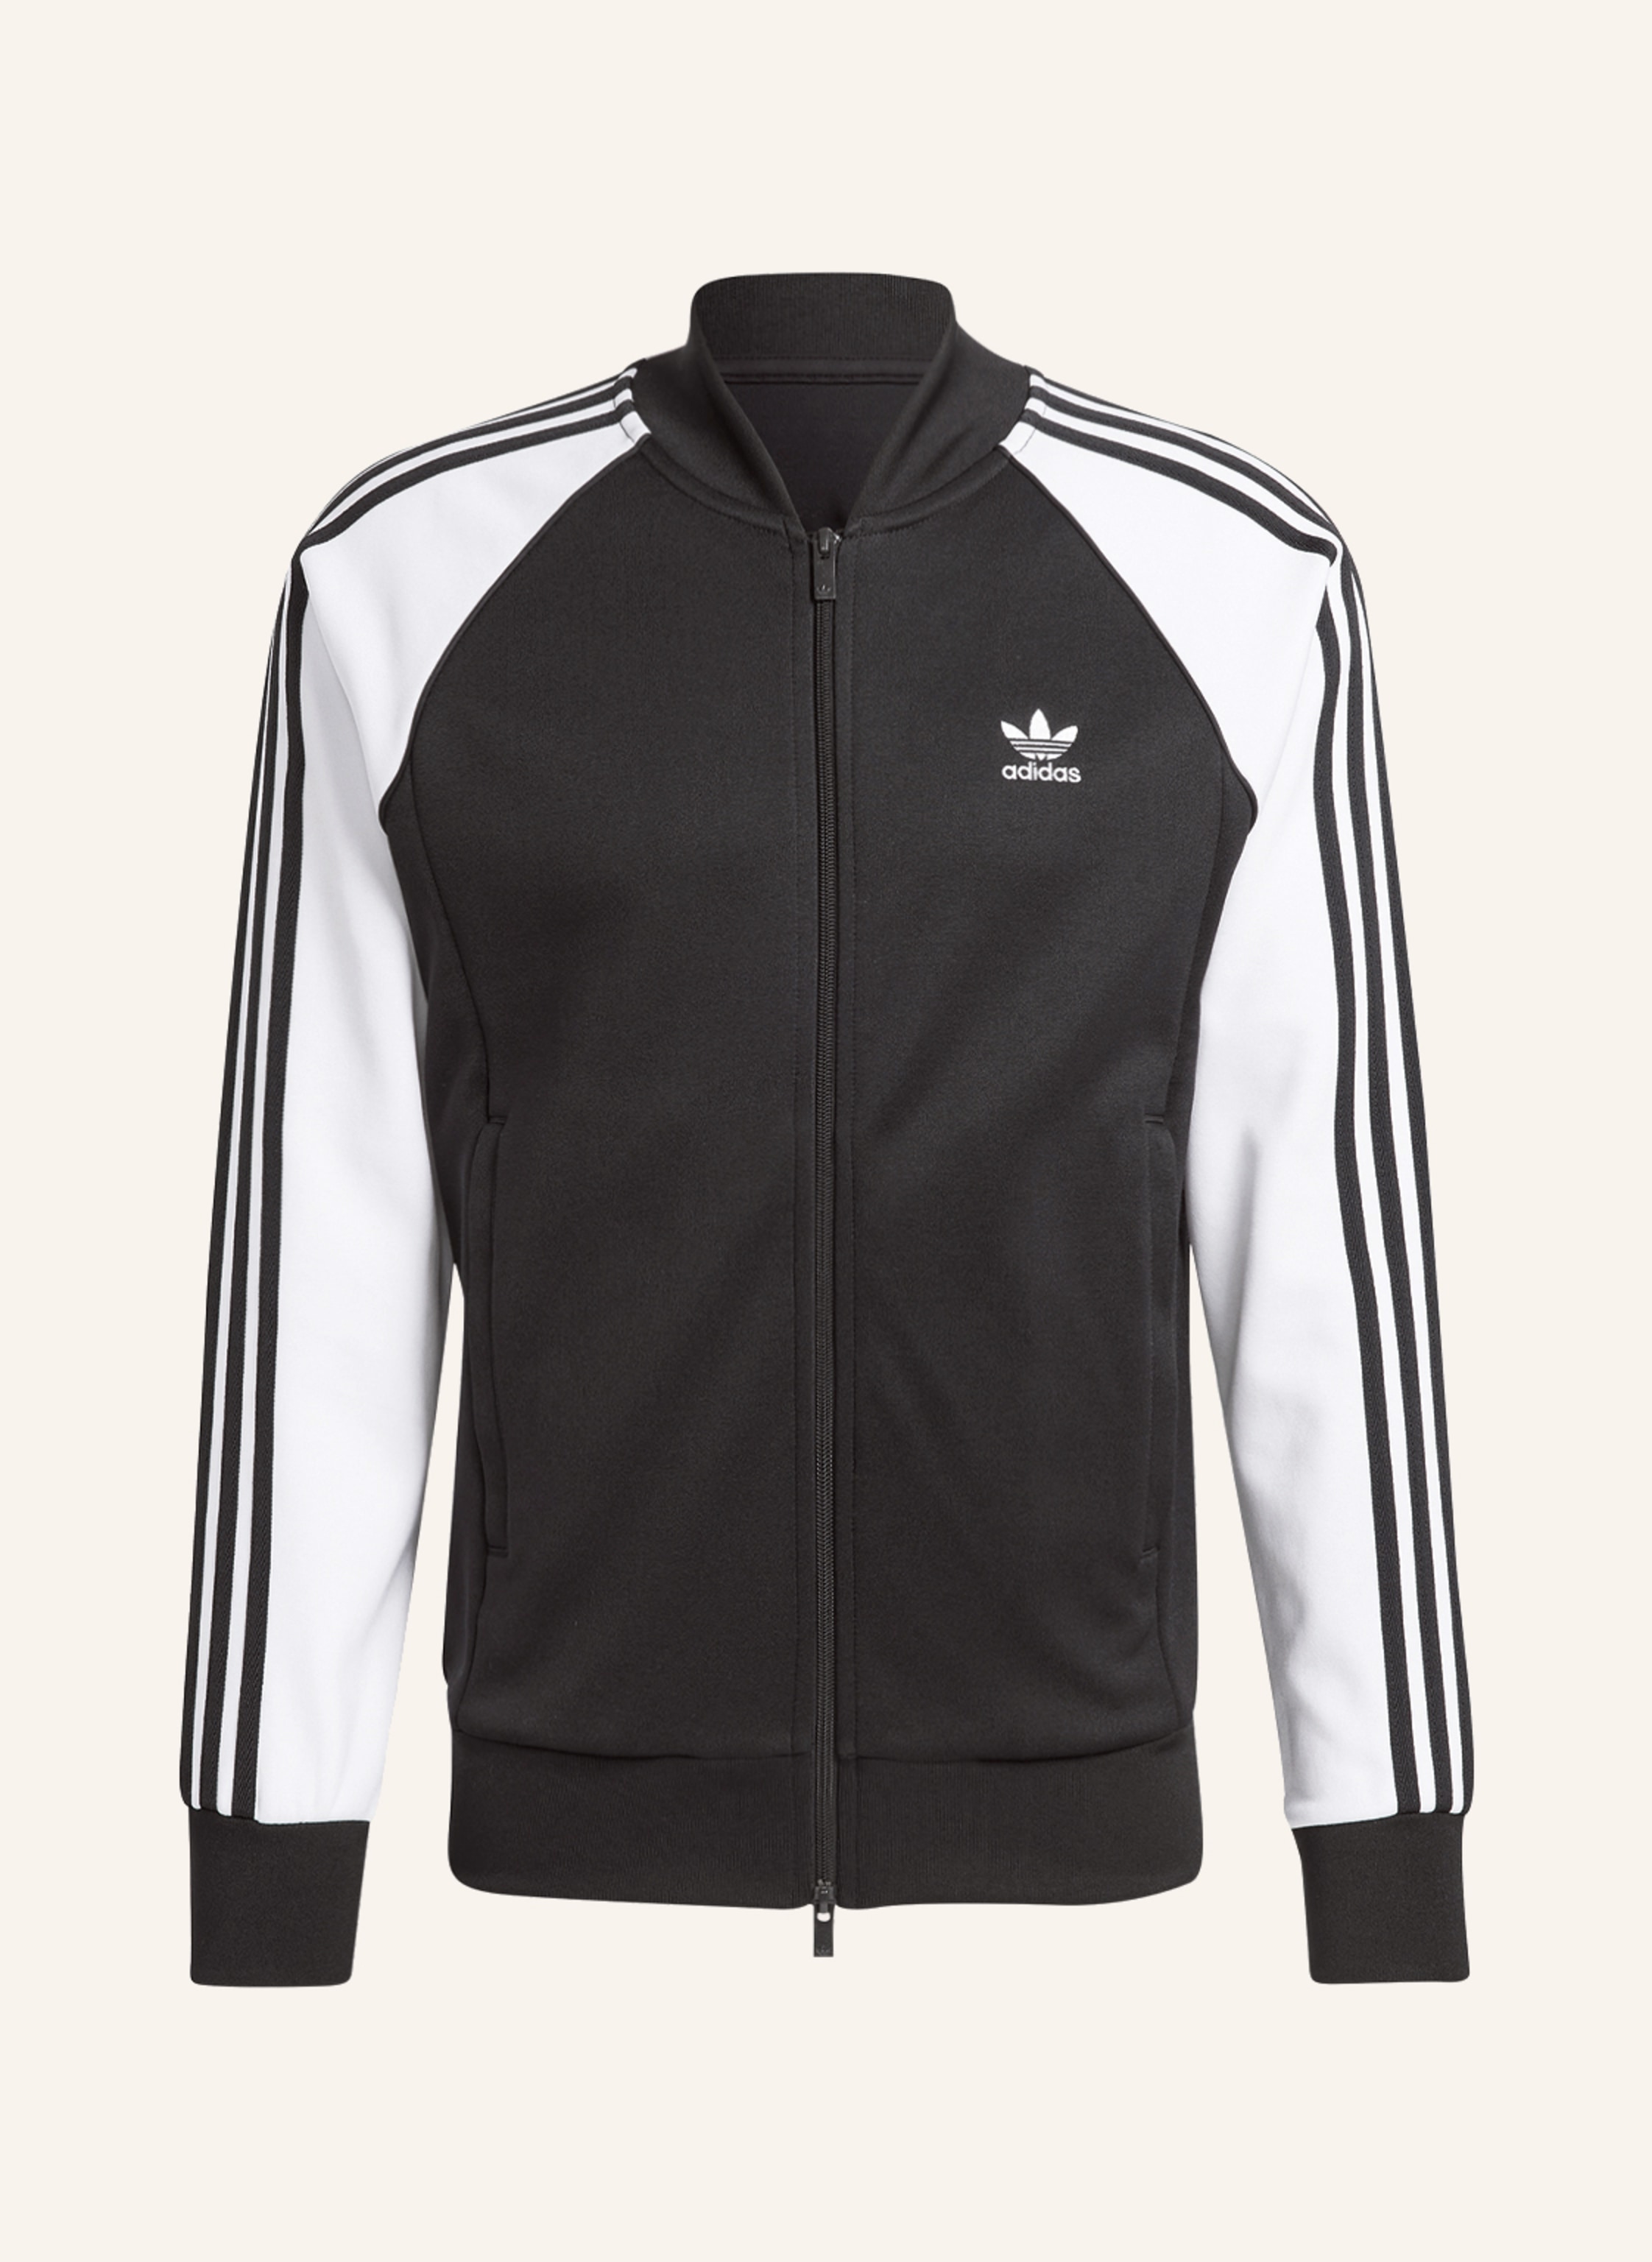 adidas Originals SST CLASSICS ADICOLOR white Training jacket black/ in ORIGINALS